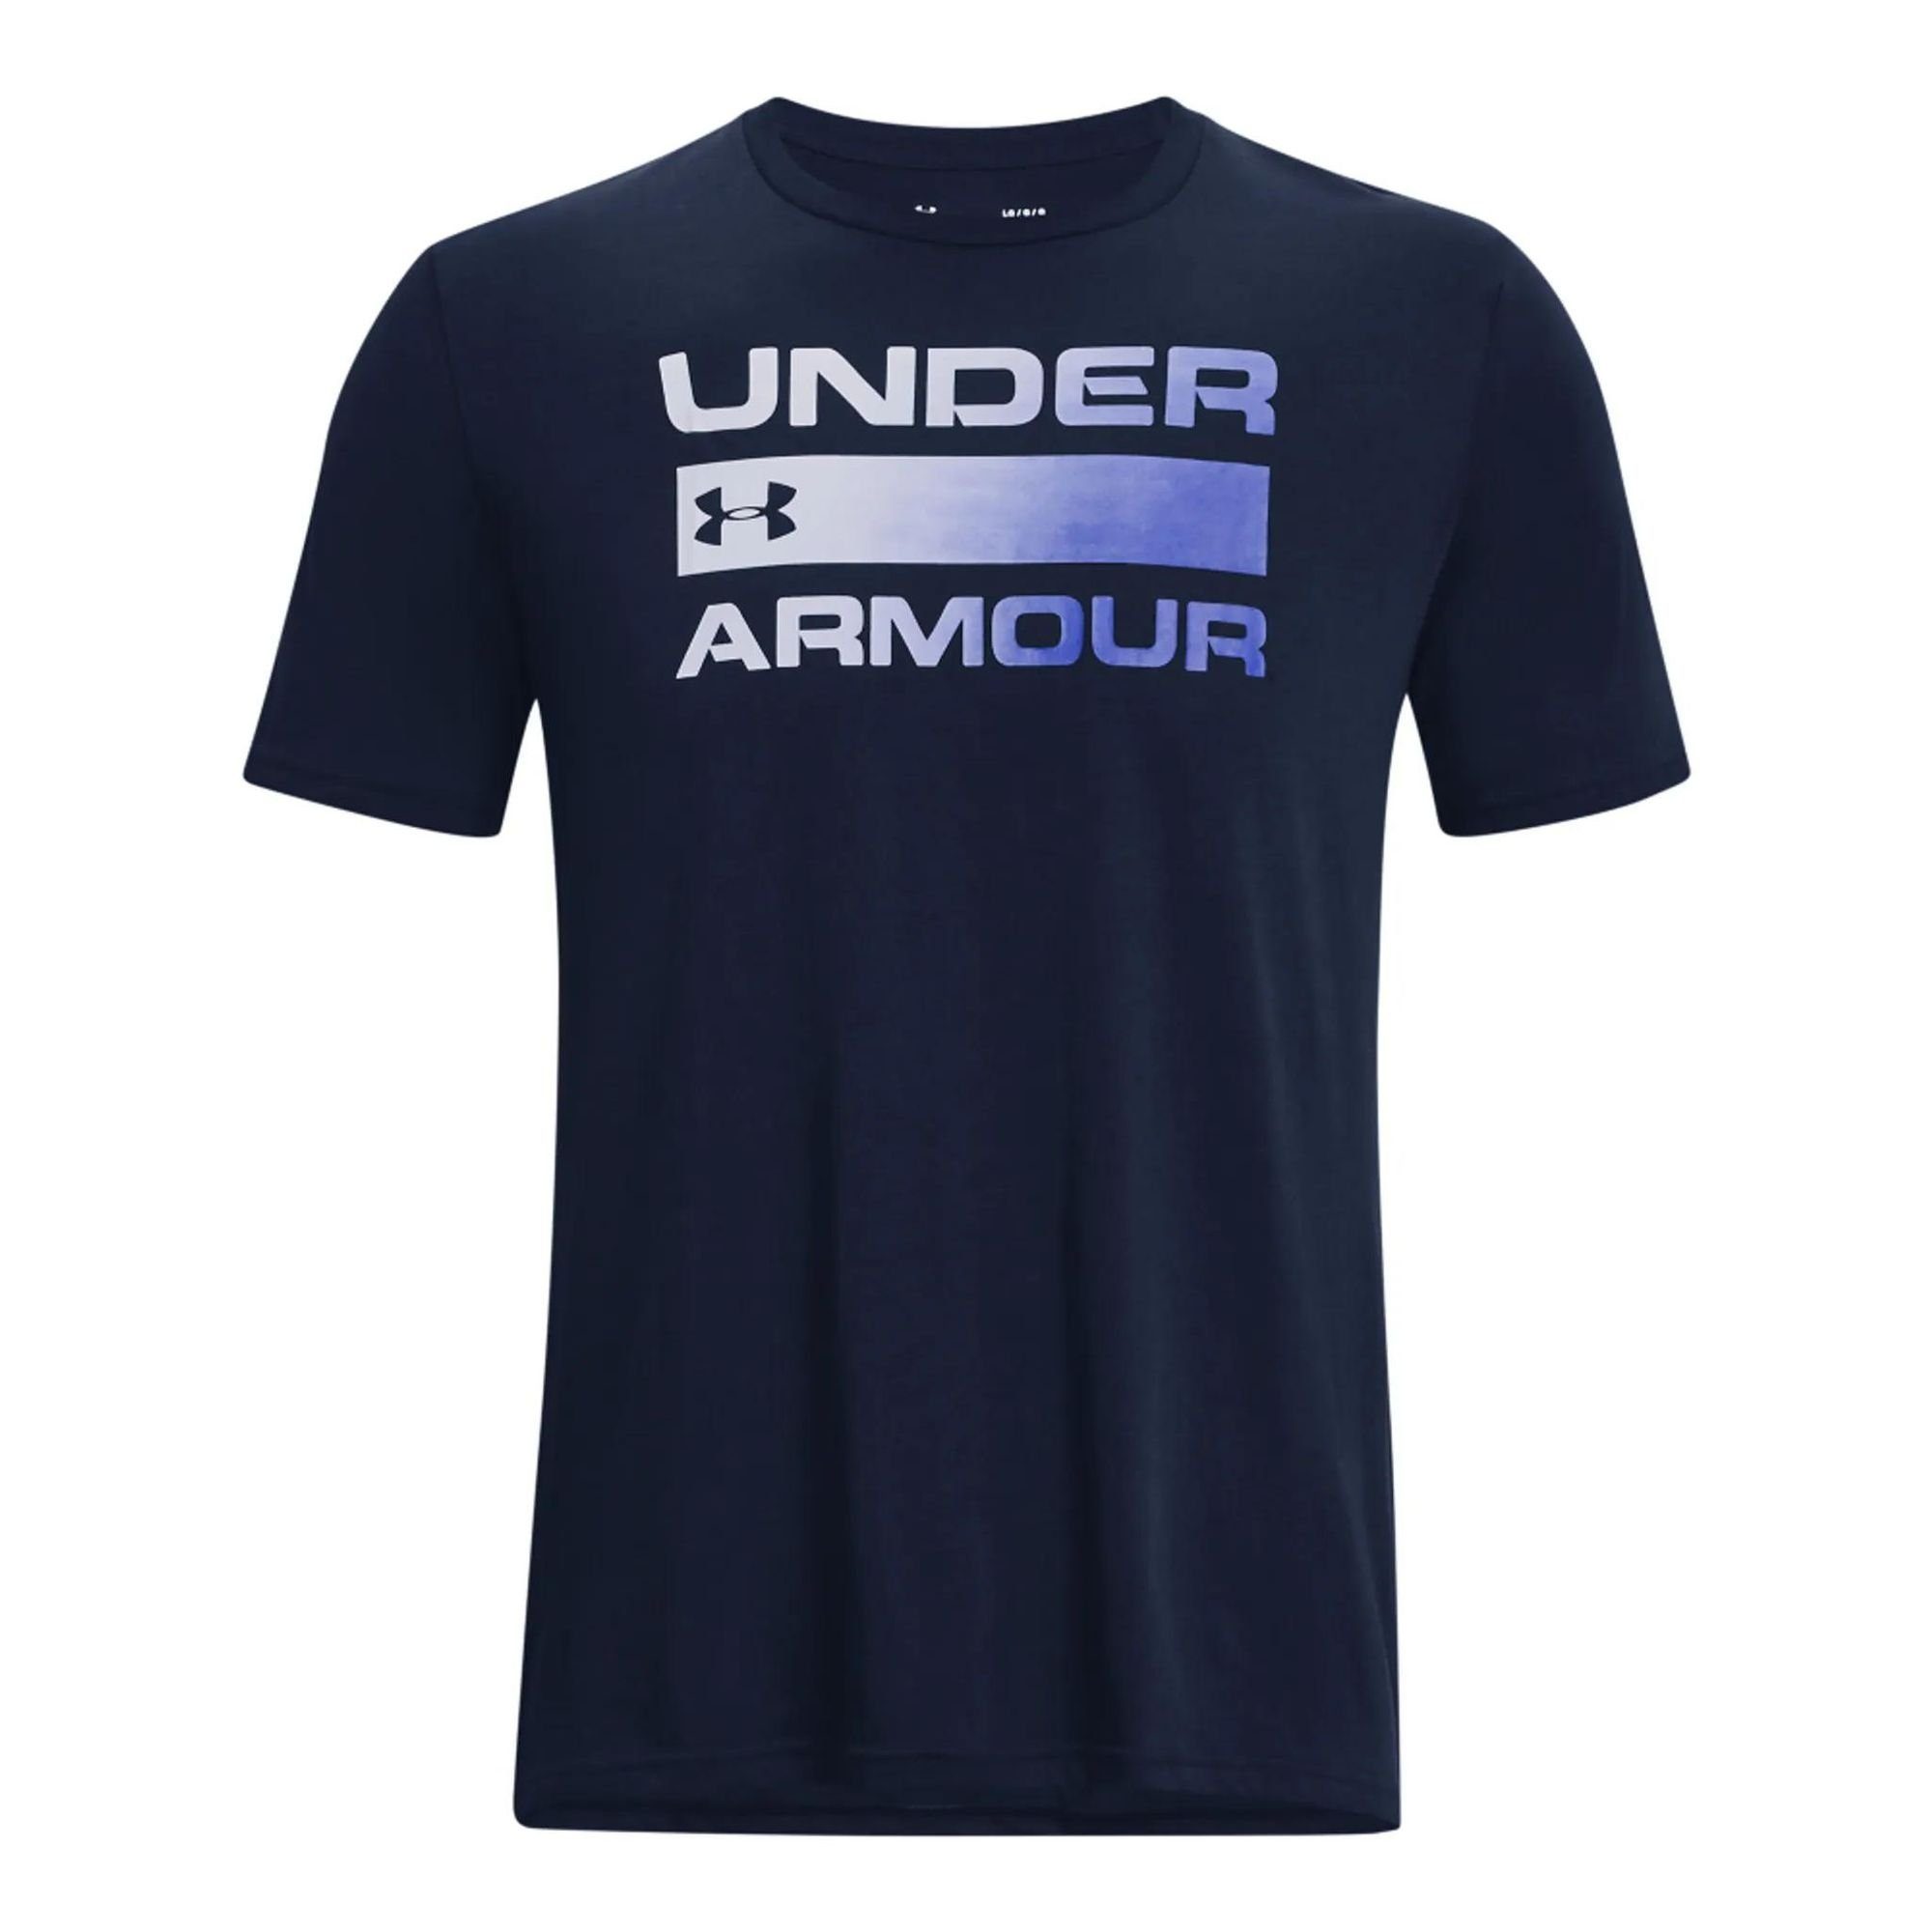 Under Kurzarm-Oberteil Team Herren Issue Dunkelblau UA Wordmark Armour® T-Shirt